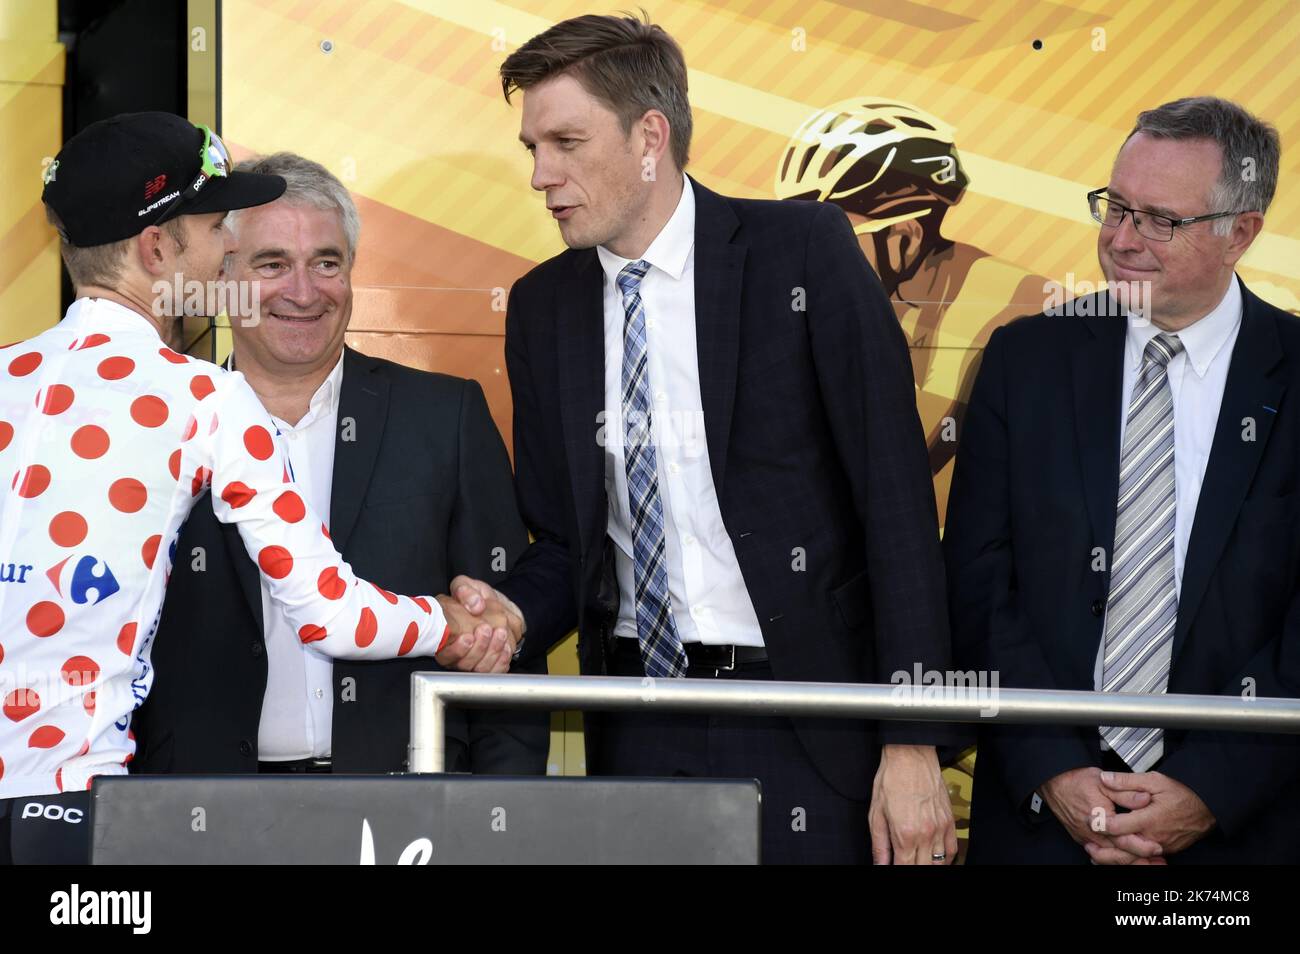 Nathan BROWN endosse le maillot Blanc à Pois Rouges. Il est félicité par Jean-Marc FOURNEL, maire de Longwy, Mathieu KLEIN et Henry LEMOINE. PHOTO Alexandre MARCHI. Stock Photo